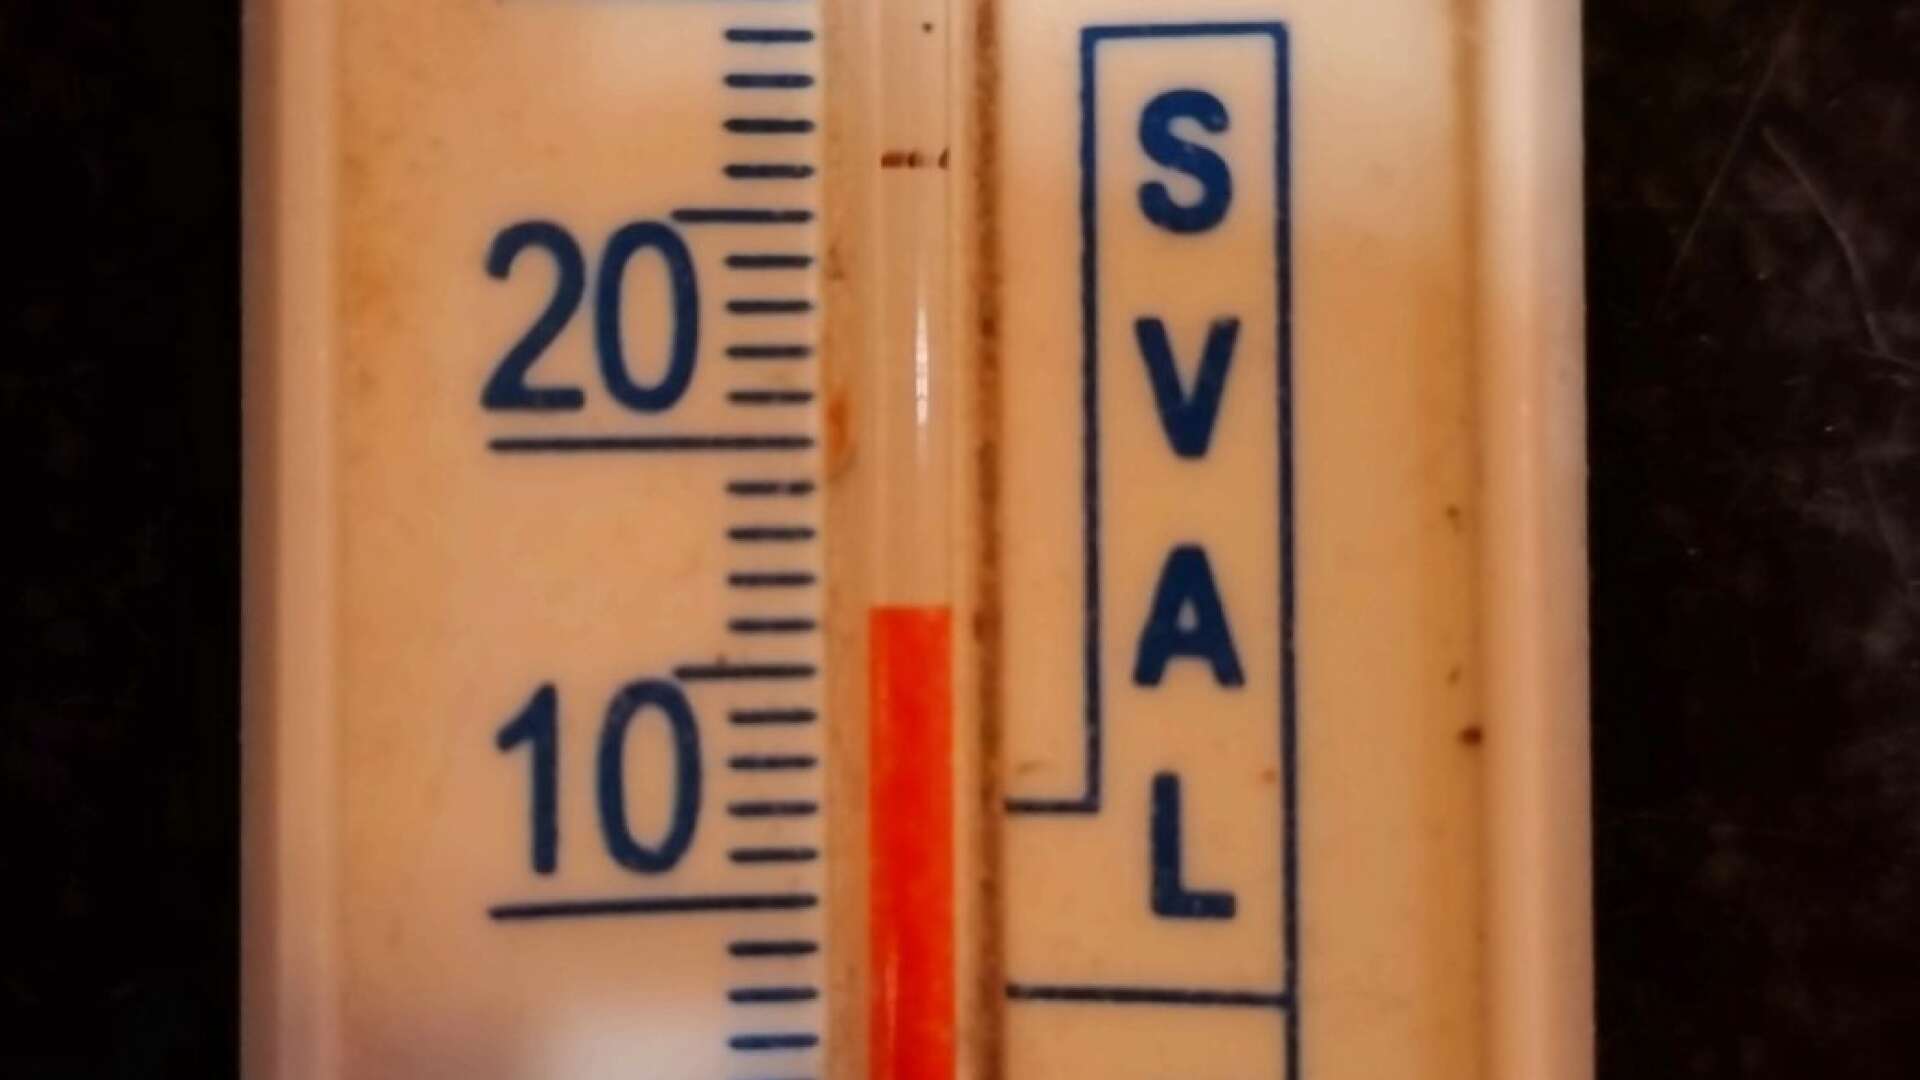 Termometern som visade 16 grader. Foto: Läsarbild